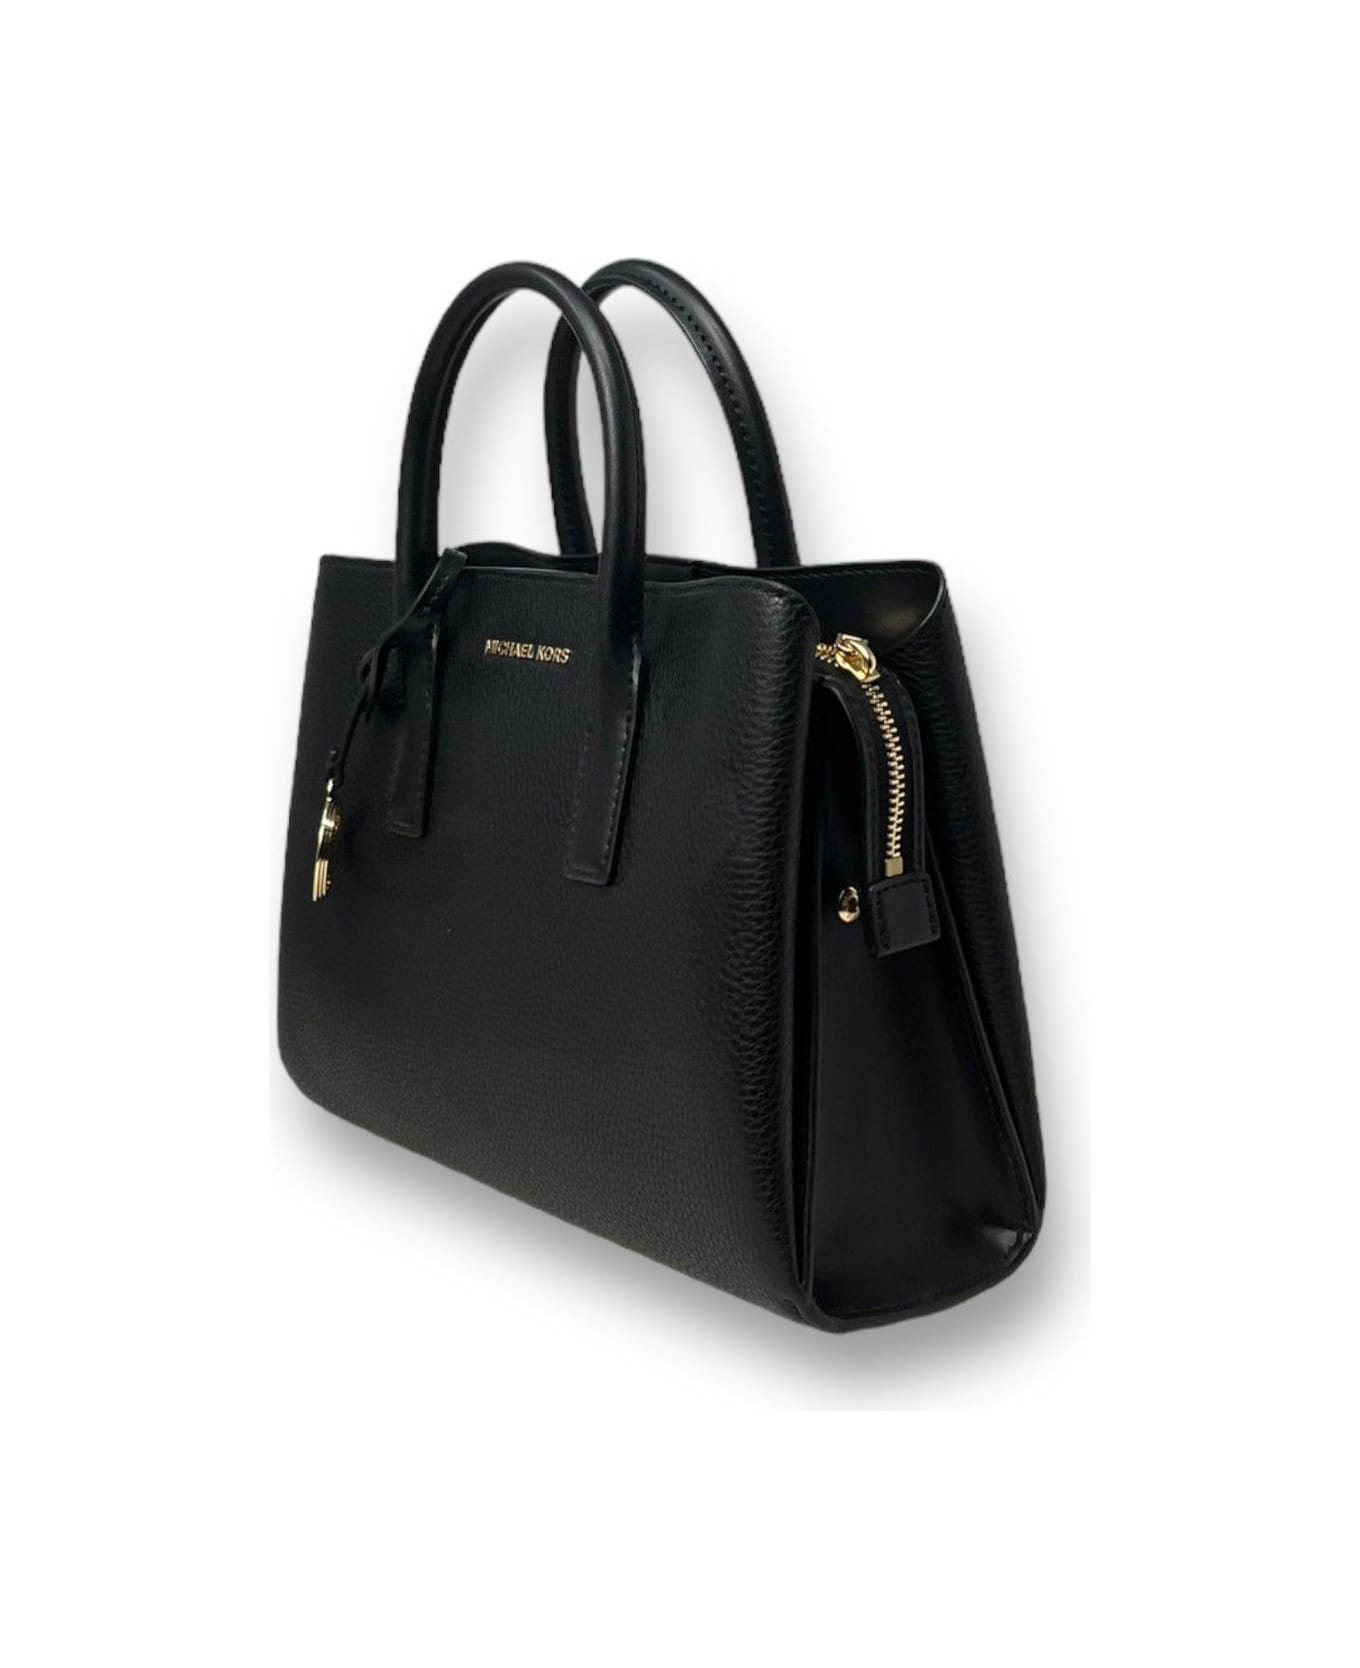 Michael Kors Ruthie Medium Top Handle Bag Michael Kors - BLACK